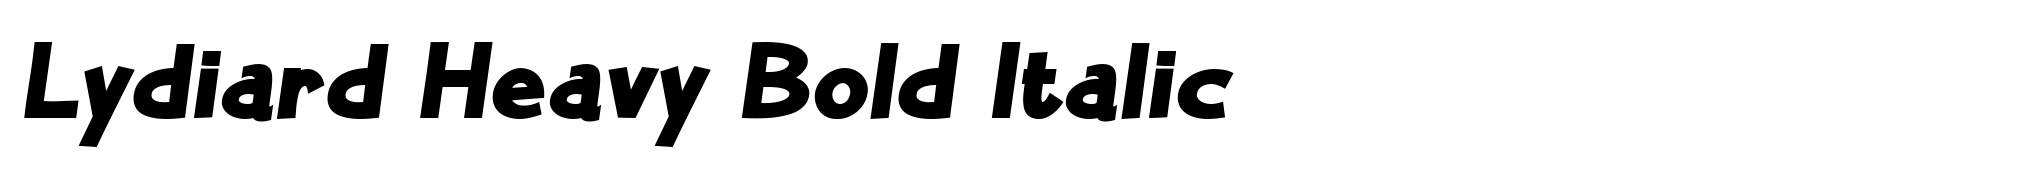 Lydiard Heavy Bold Italic image